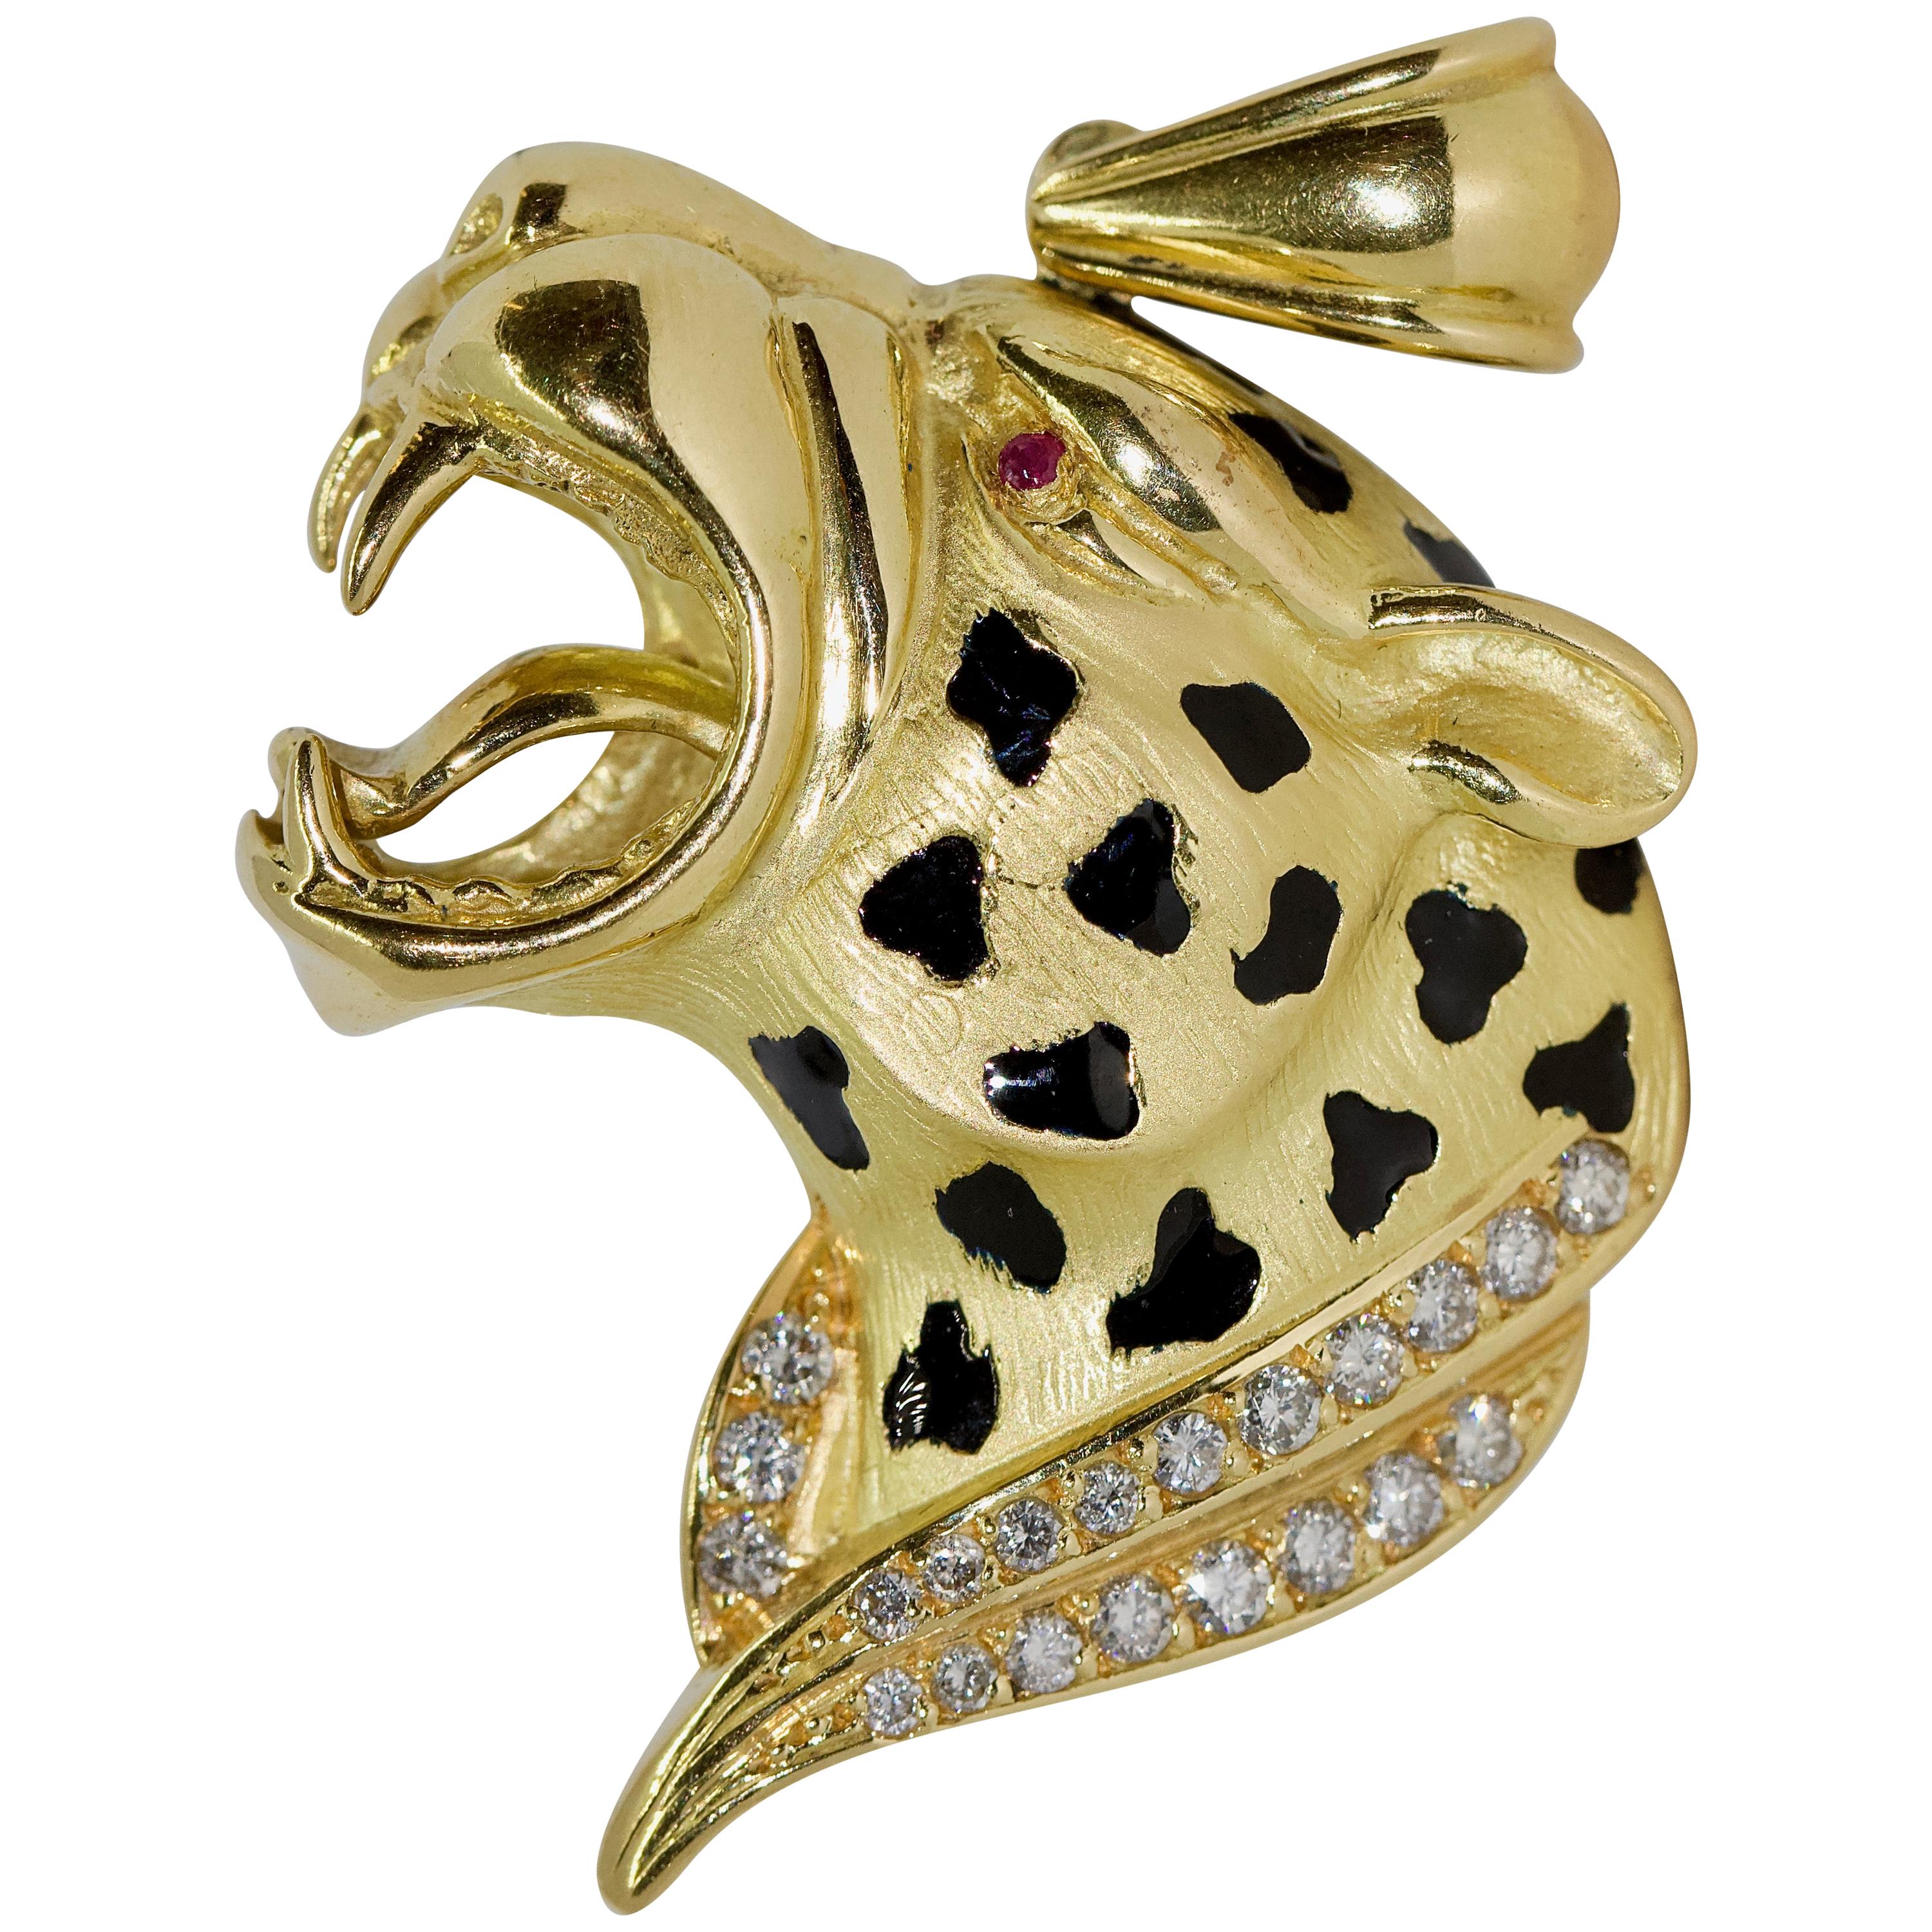 Pendentif léopard en forme de guépard, rehausseur en or 18 carats avec émail, diamants et rubis